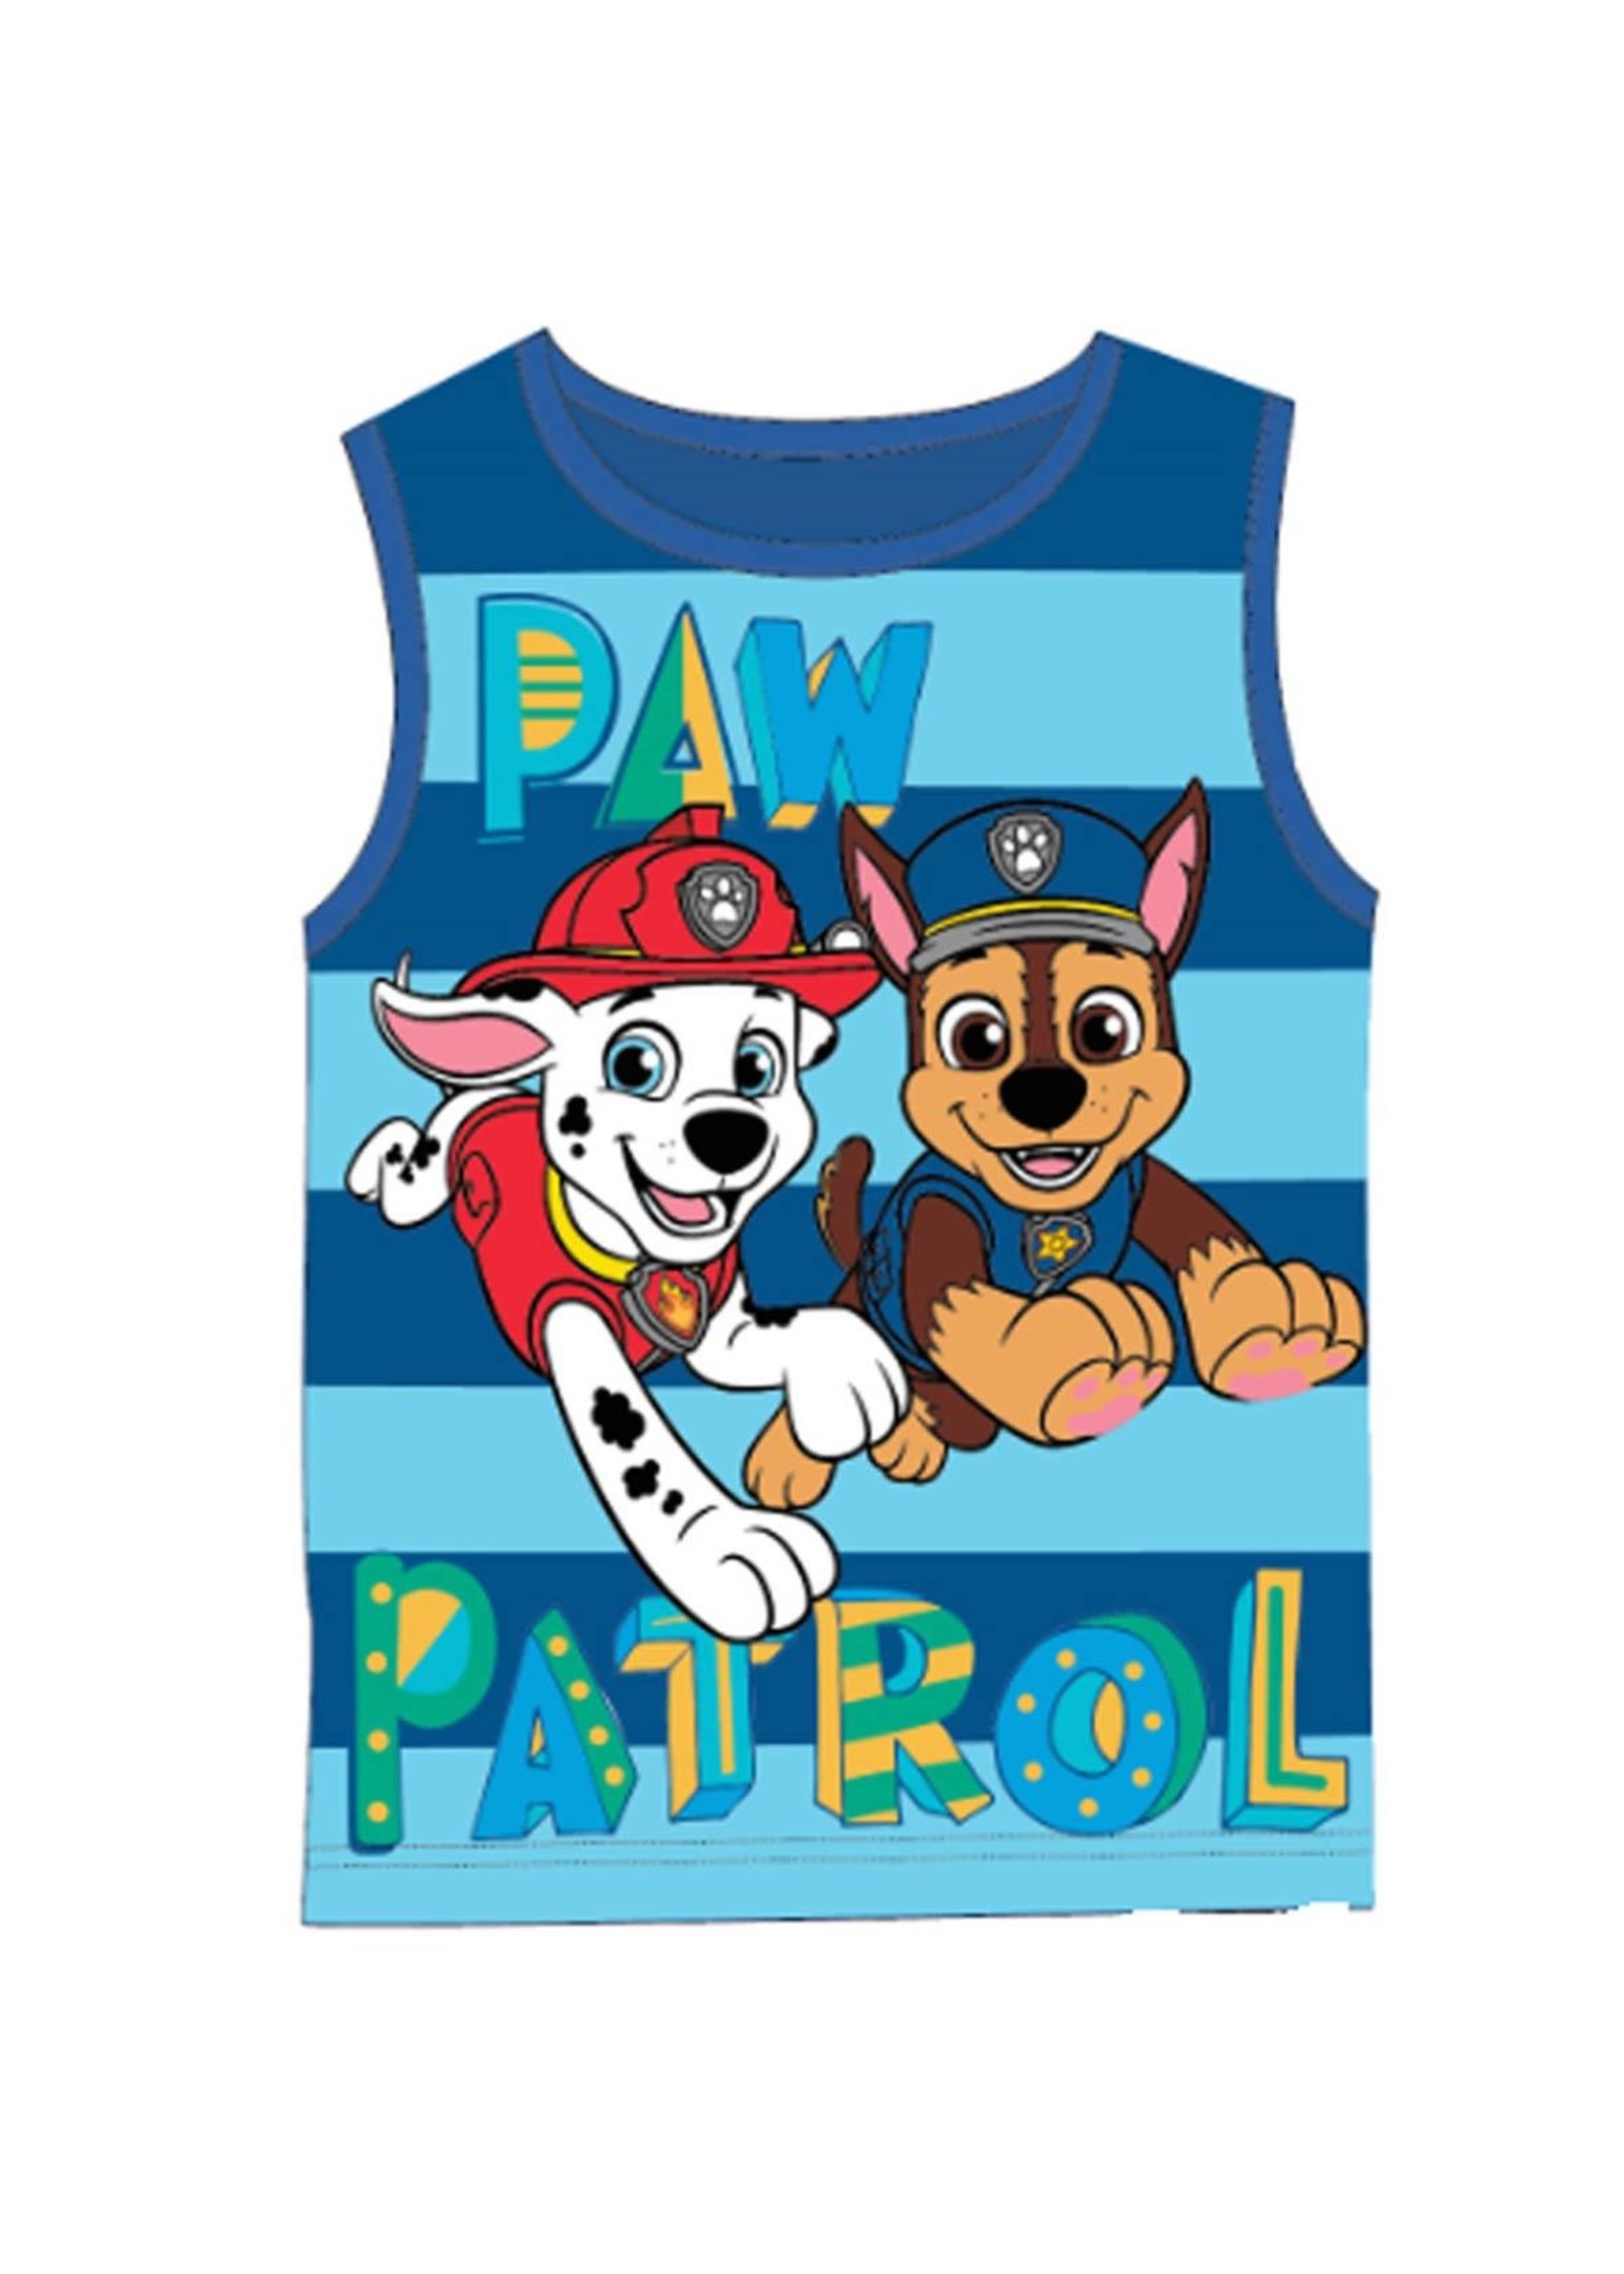 Nickelodeon Paw Patrol sleeveless shirt from Nickelodeon blue